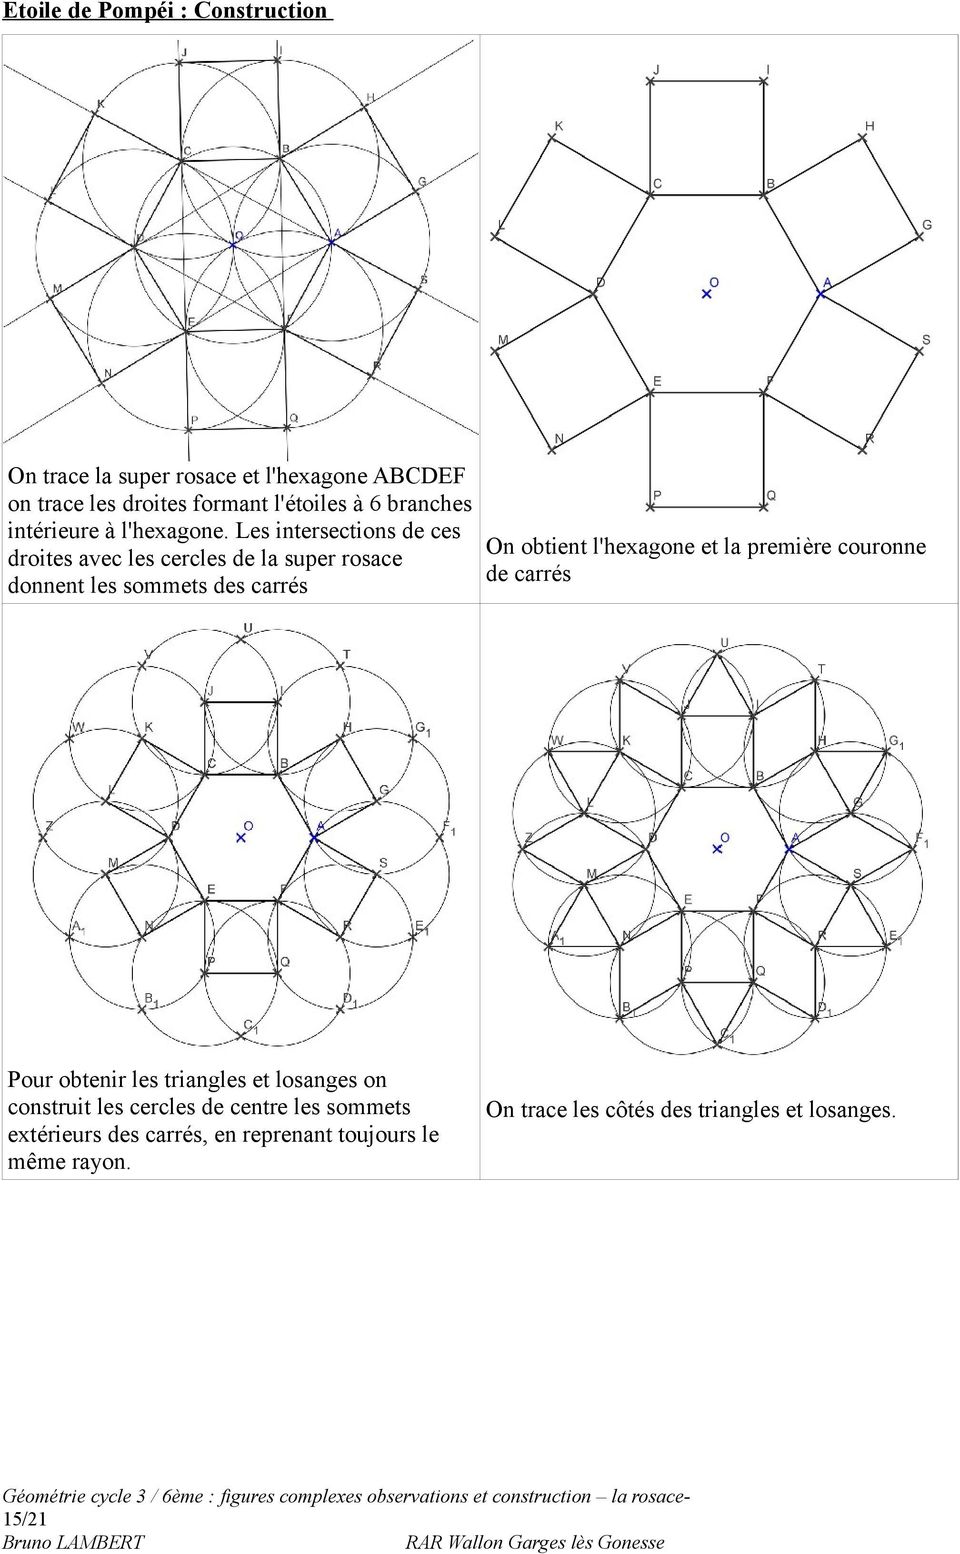 Les intersections de ces On obtient l'hexagone et la première couronne droites avec les cercles de la super rosace de carrés donnent les sommets